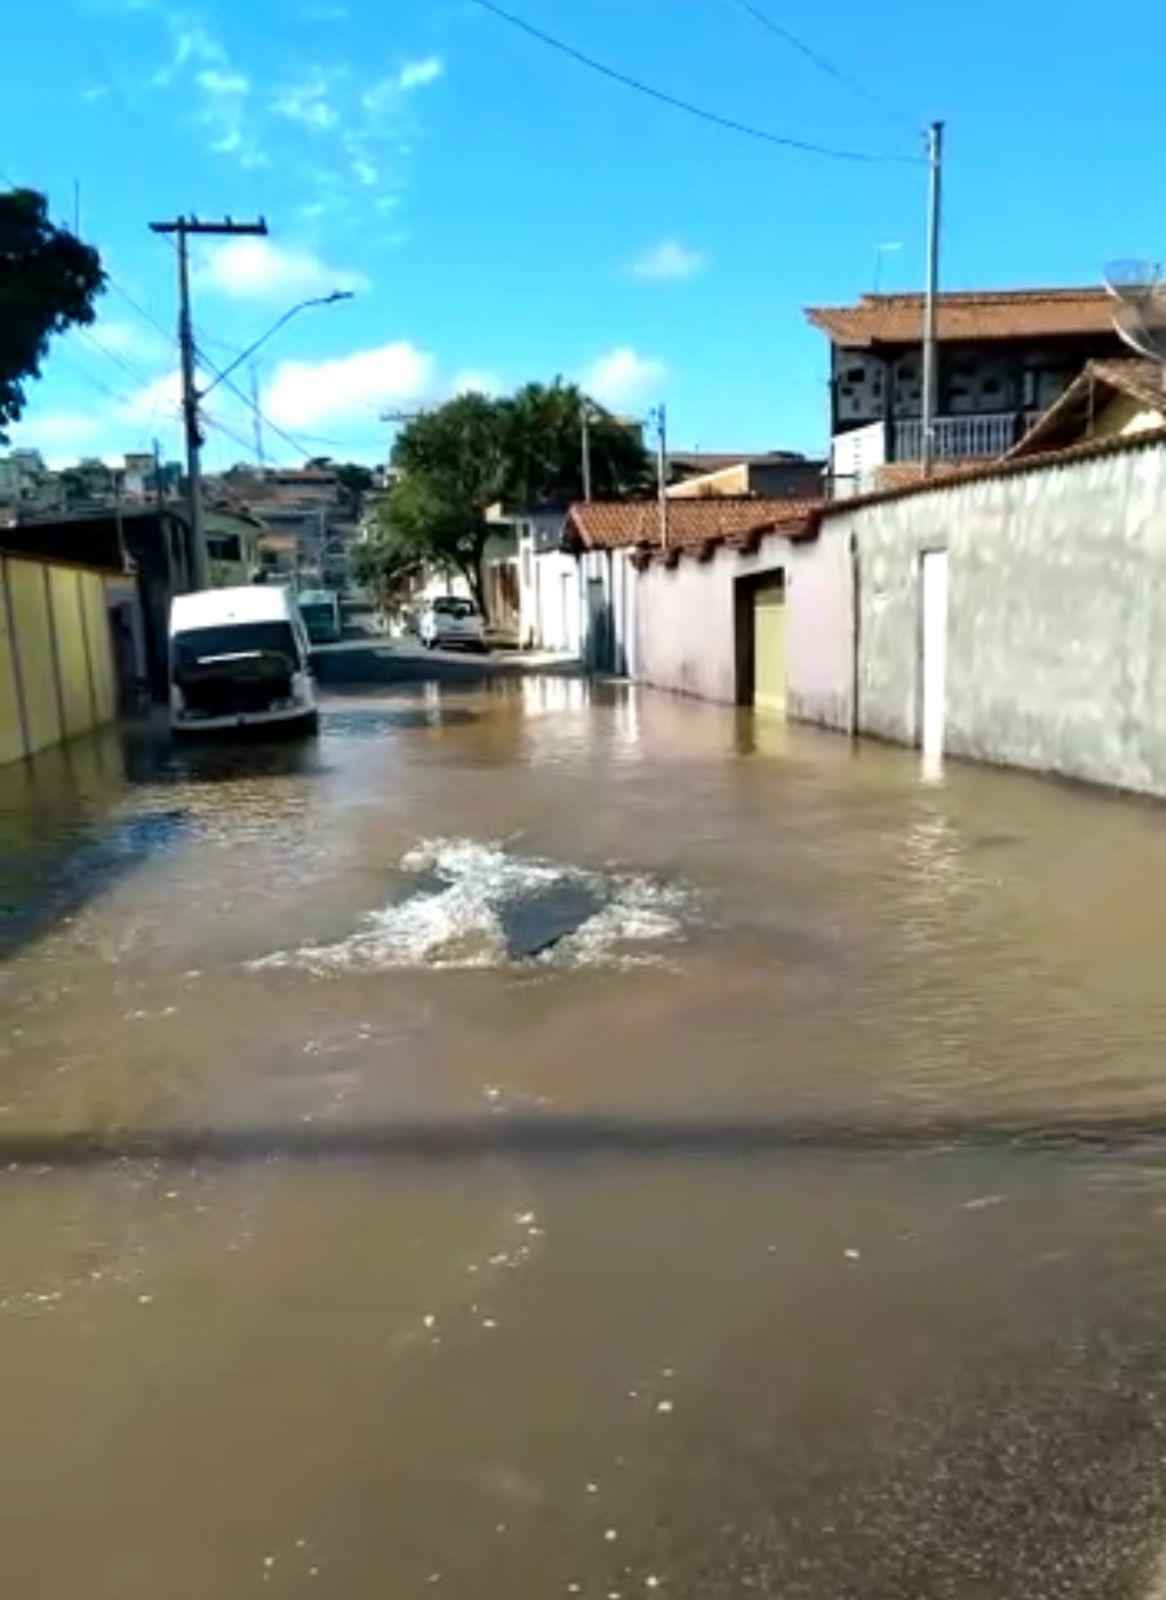 Vídeo: rua em Contagem fica inundada por vazamento de água - Rede sociais / Divulgação